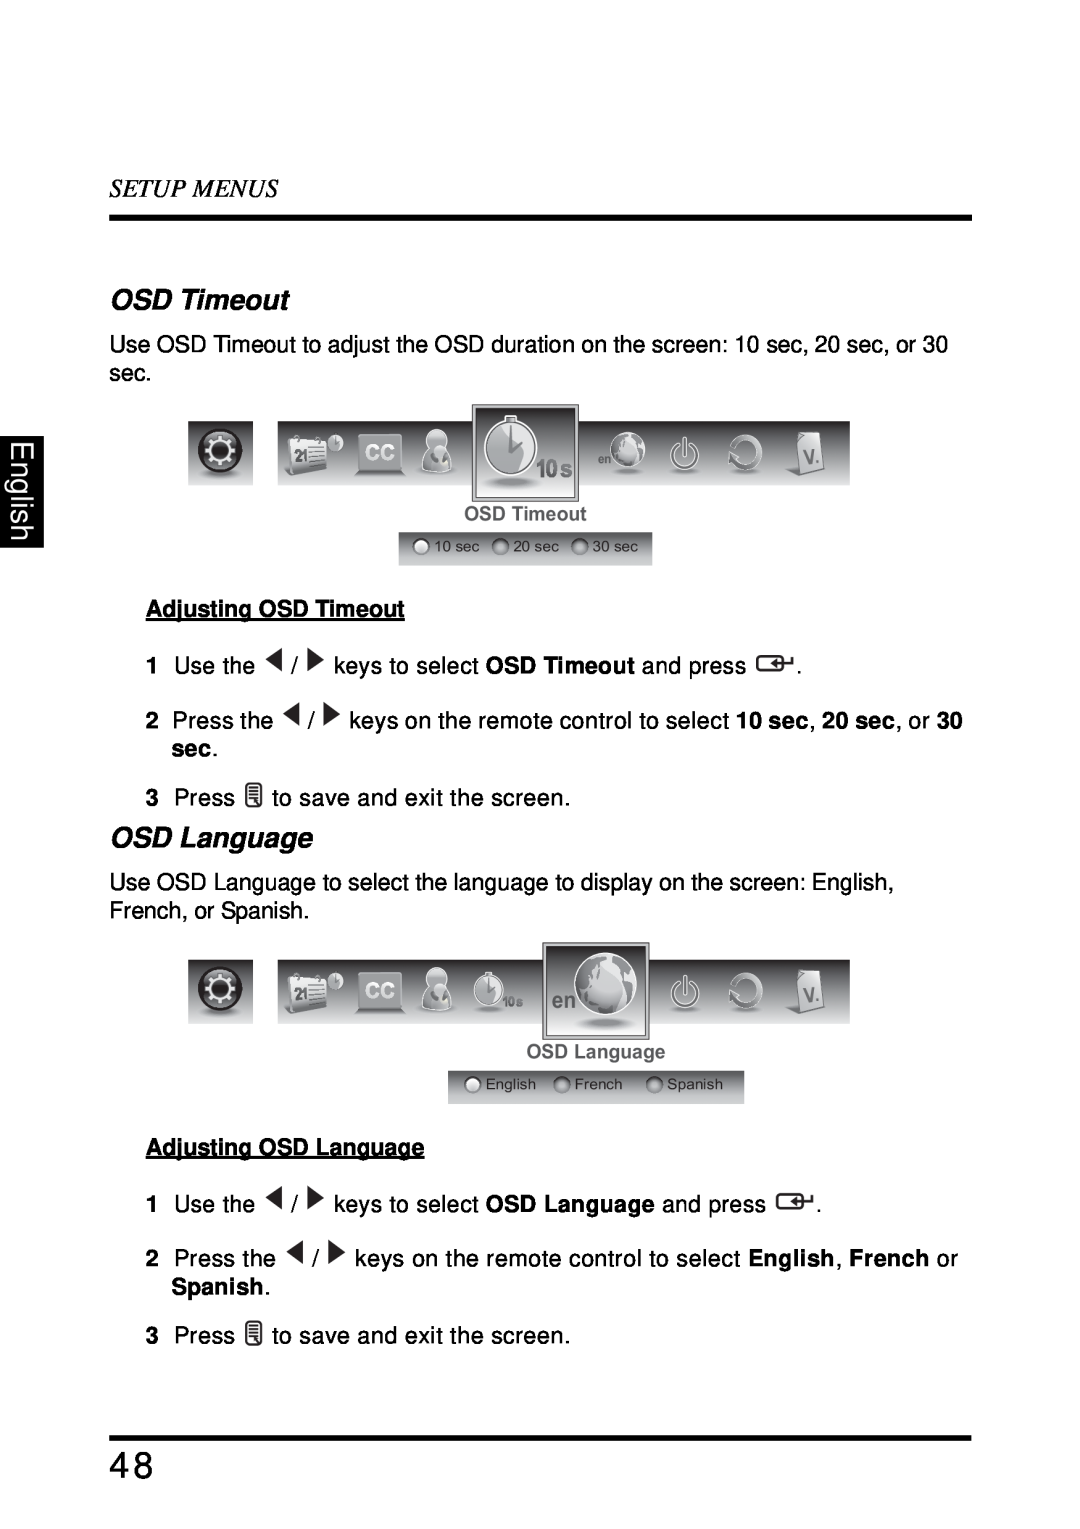 Westinghouse SK-32H640G user manual English, Setup Menus, Adjusting OSD Timeout, Adjusting OSD Language 